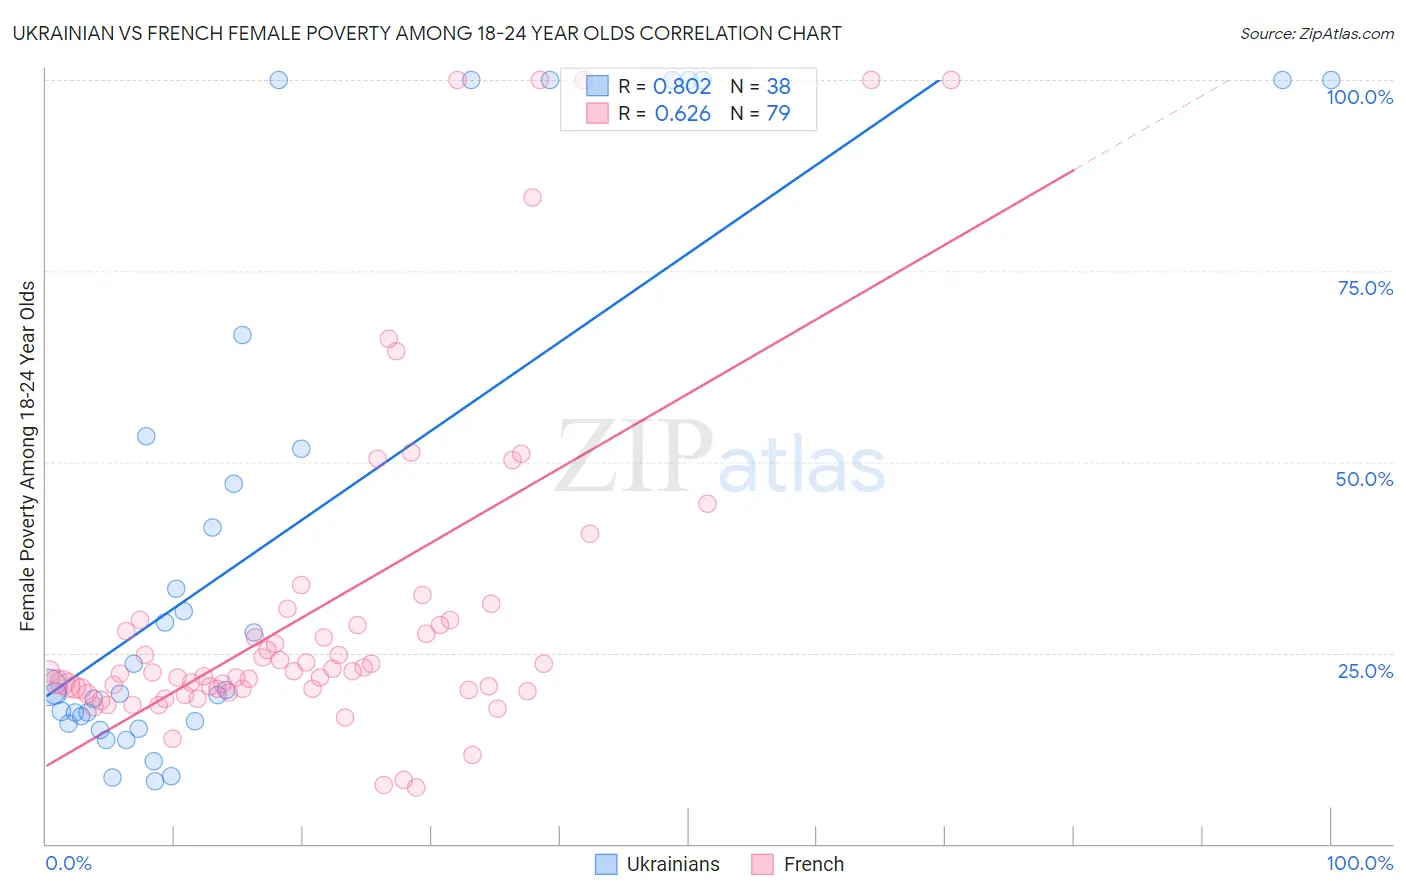 Ukrainian vs French Female Poverty Among 18-24 Year Olds